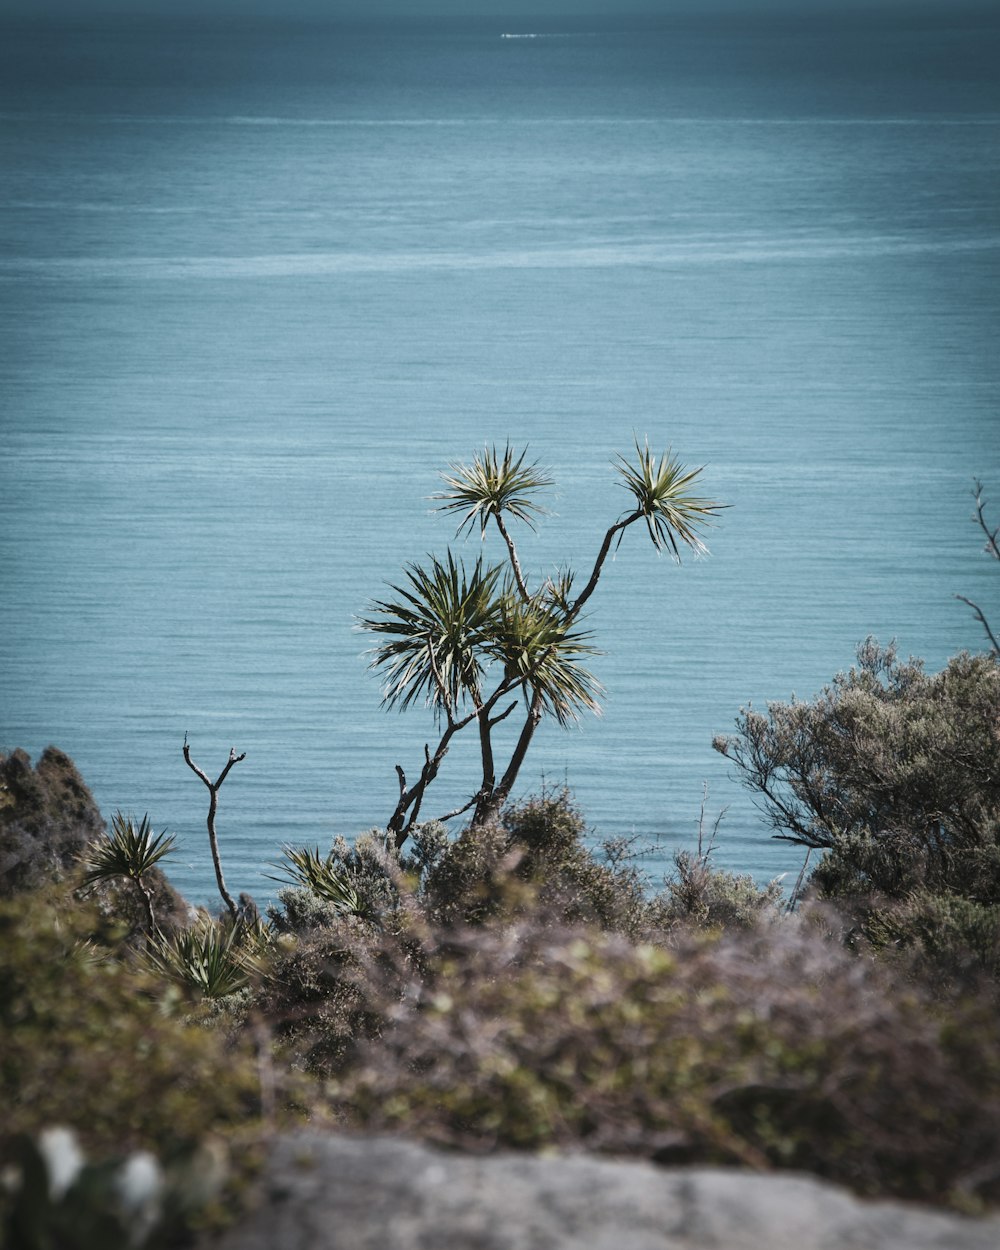 Un albero solitario sul bordo di una scogliera a picco sull'oceano